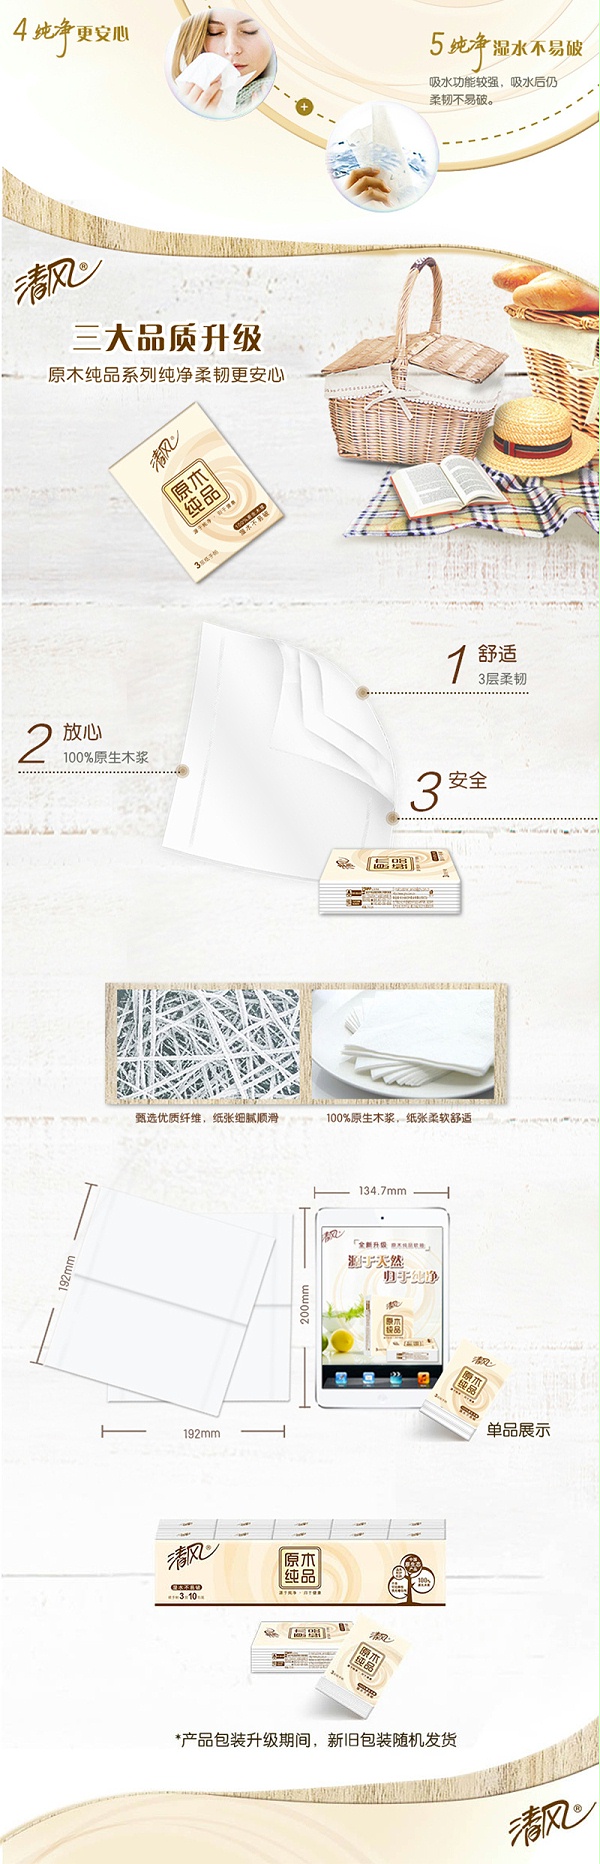 清风3层迷你型原木纯品手帕纸B66AC1M